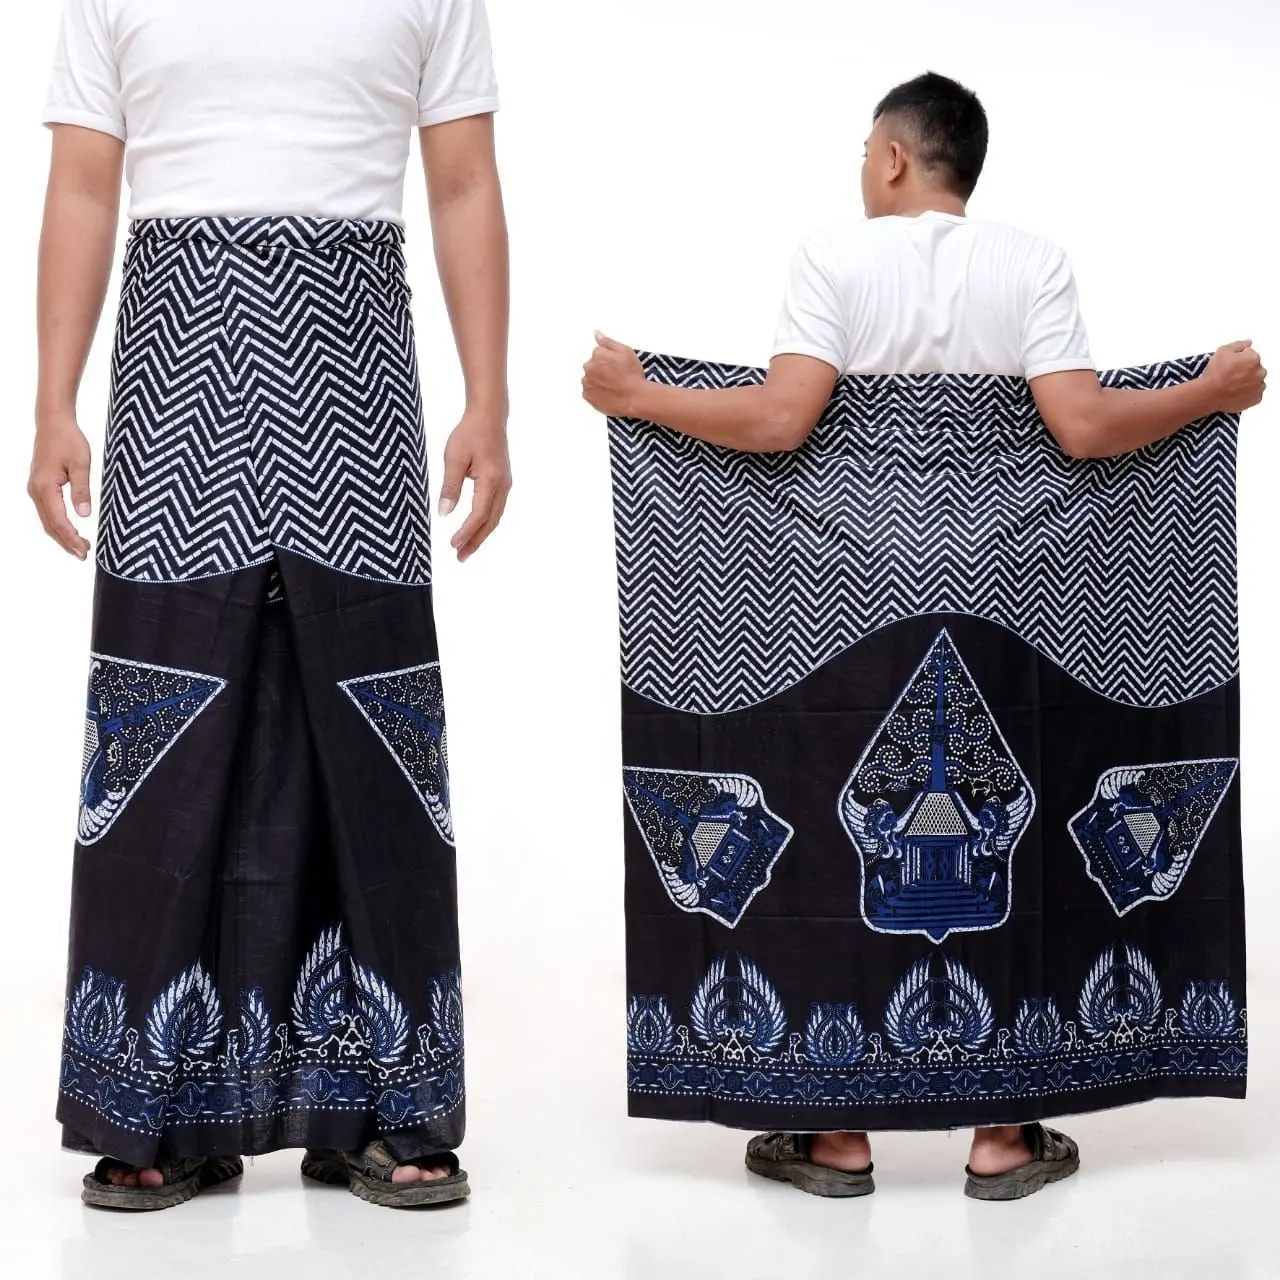 Новые поступления, оптовая продажа, Индонезийская традиционная этническая одежда унисекс, батик саронг для женщин, унисекс